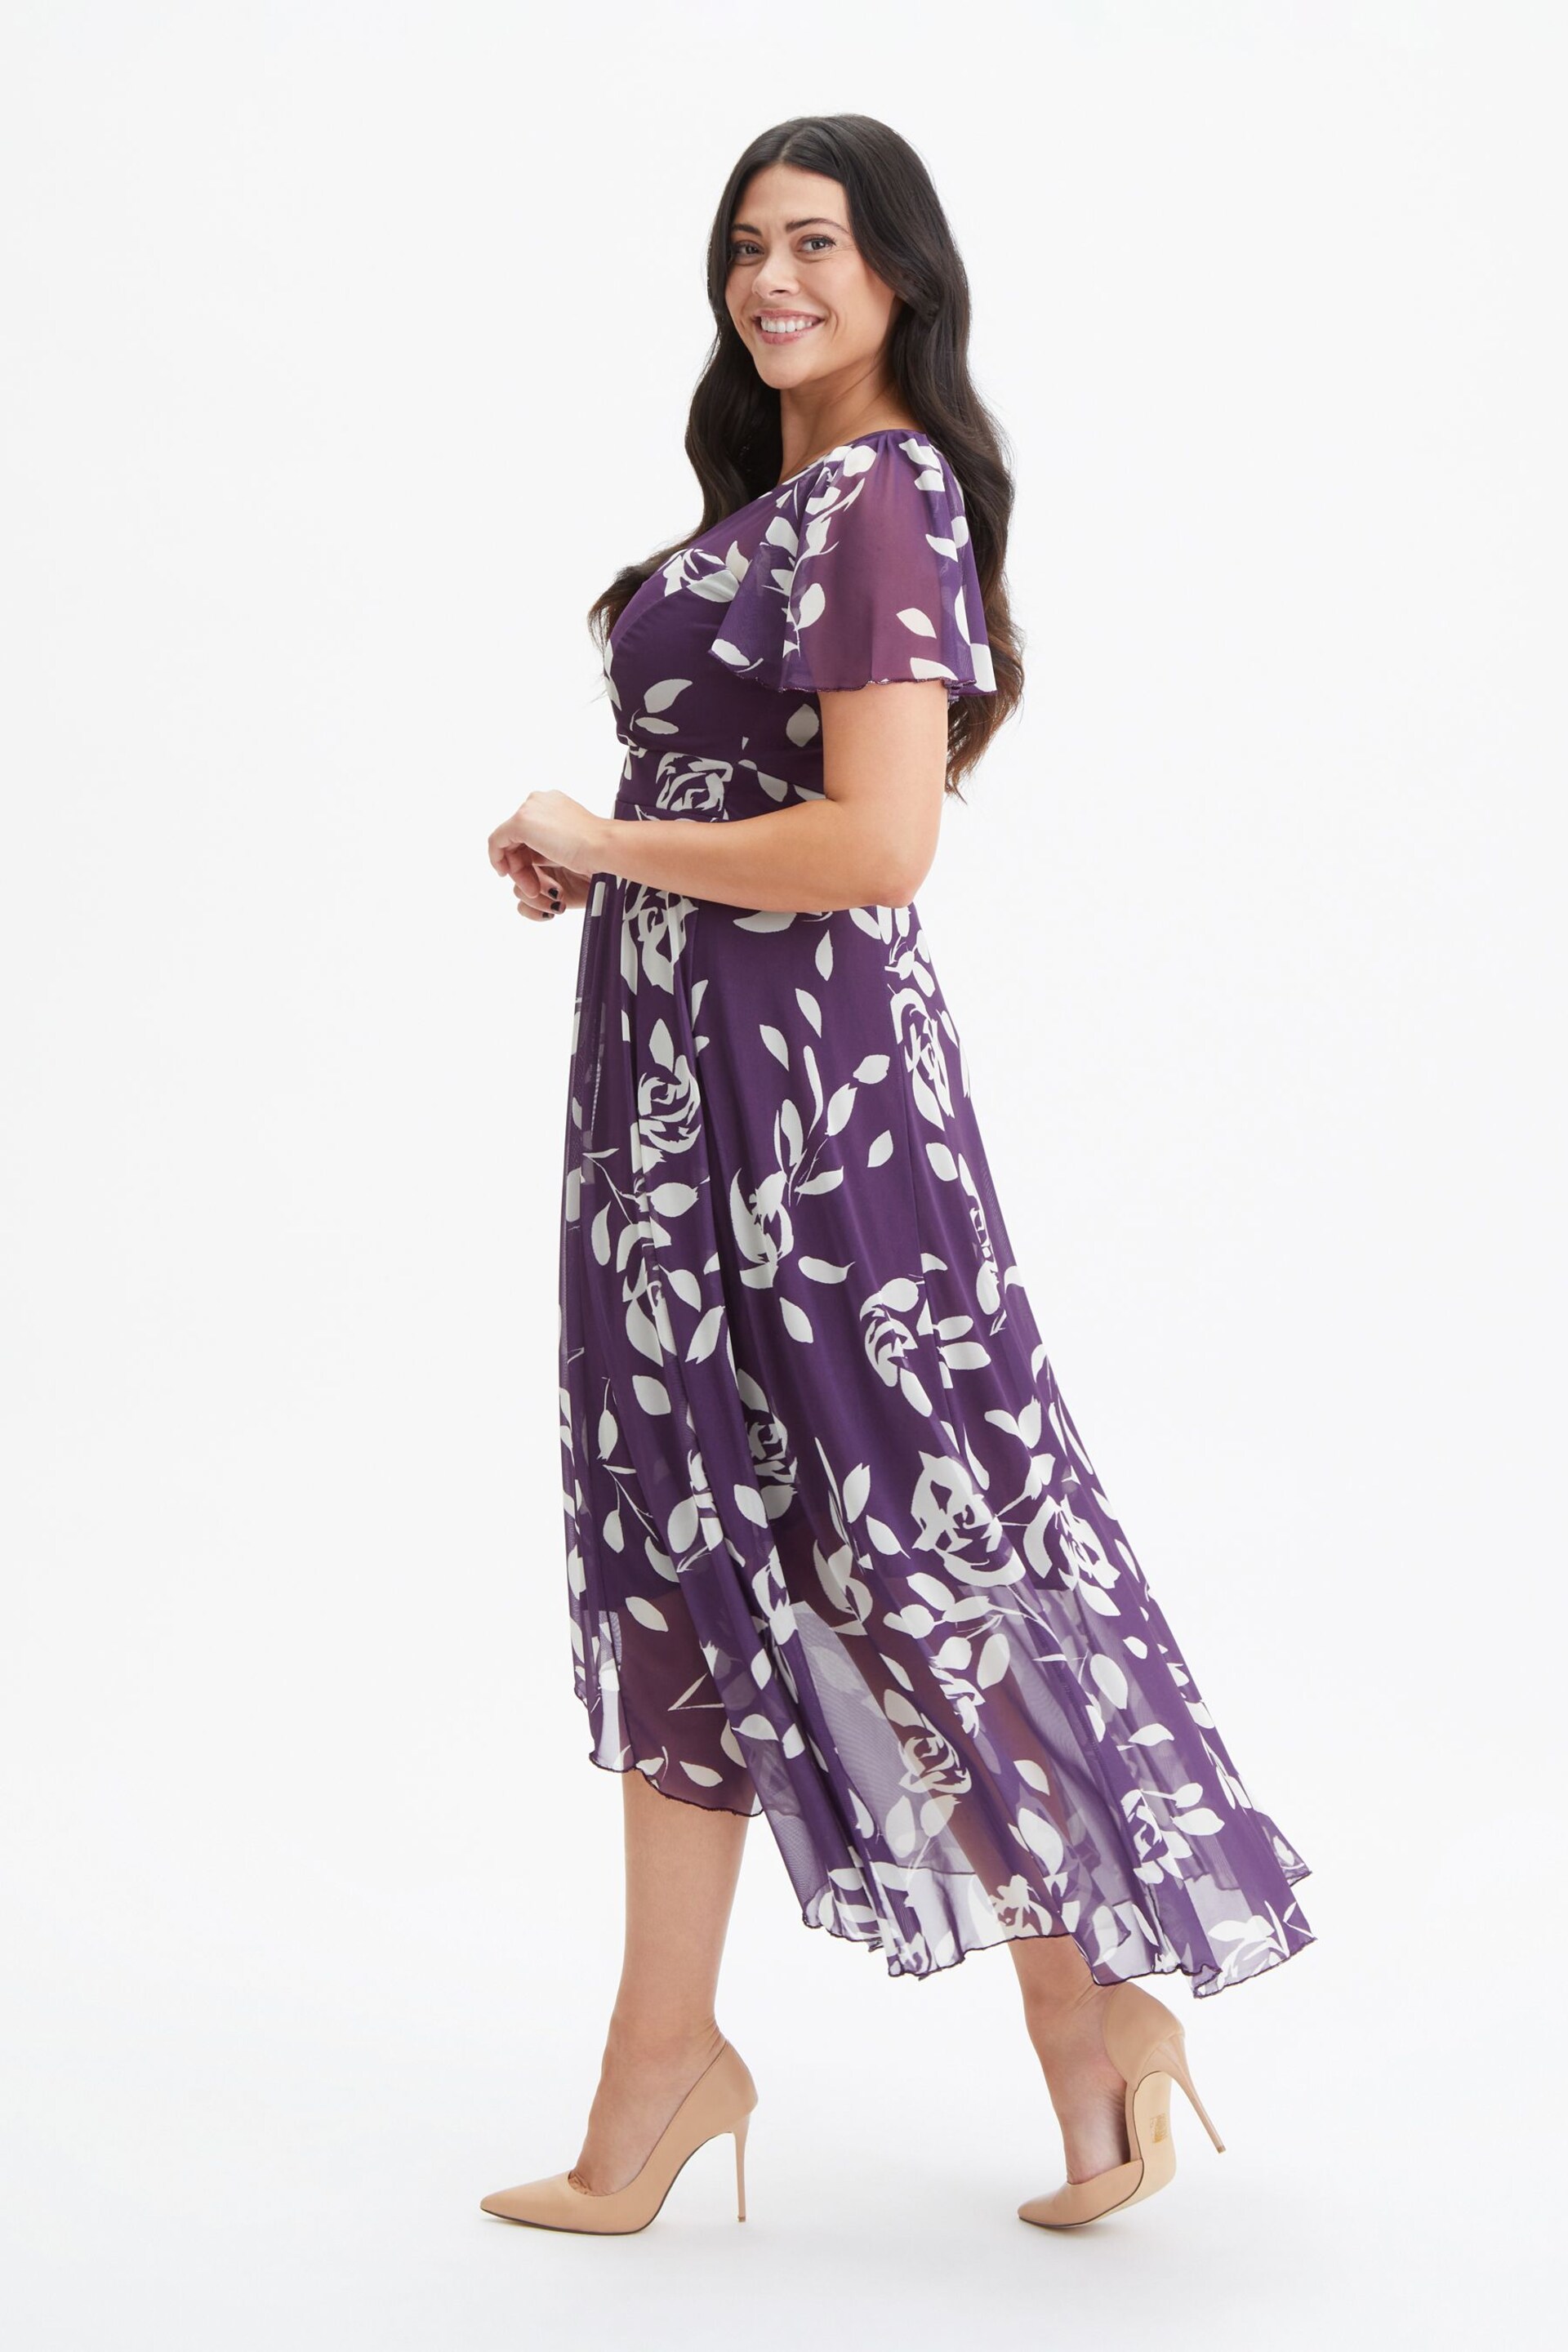 Scarlett & Jo Purple Tilly Print Angel Sleeve Sweetheart Dress - Image 3 of 4